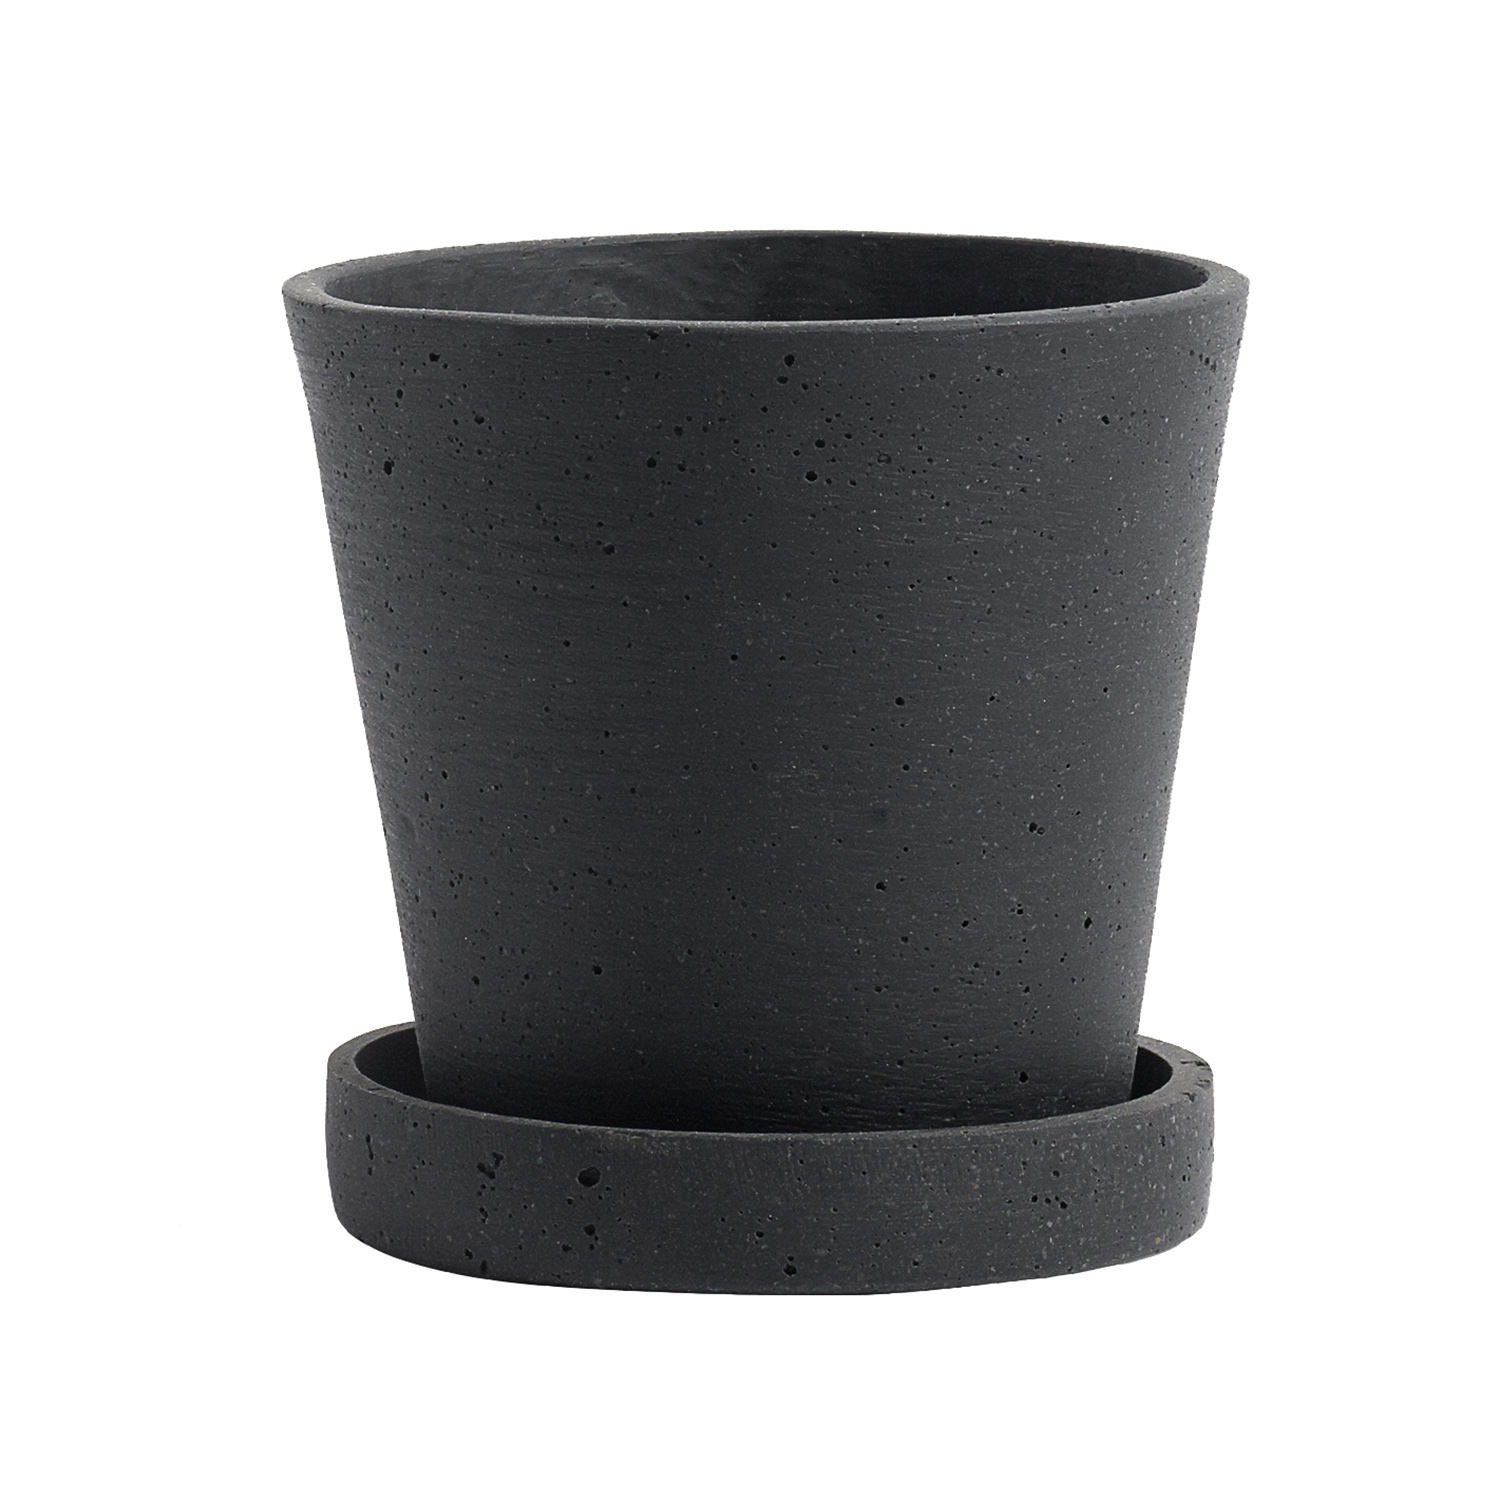 Ongedaan maken Bevestigen aan middelen Flowerpot Pot met Schotel Zwart, Ø11 cm S - Hay @ RoyalDesign